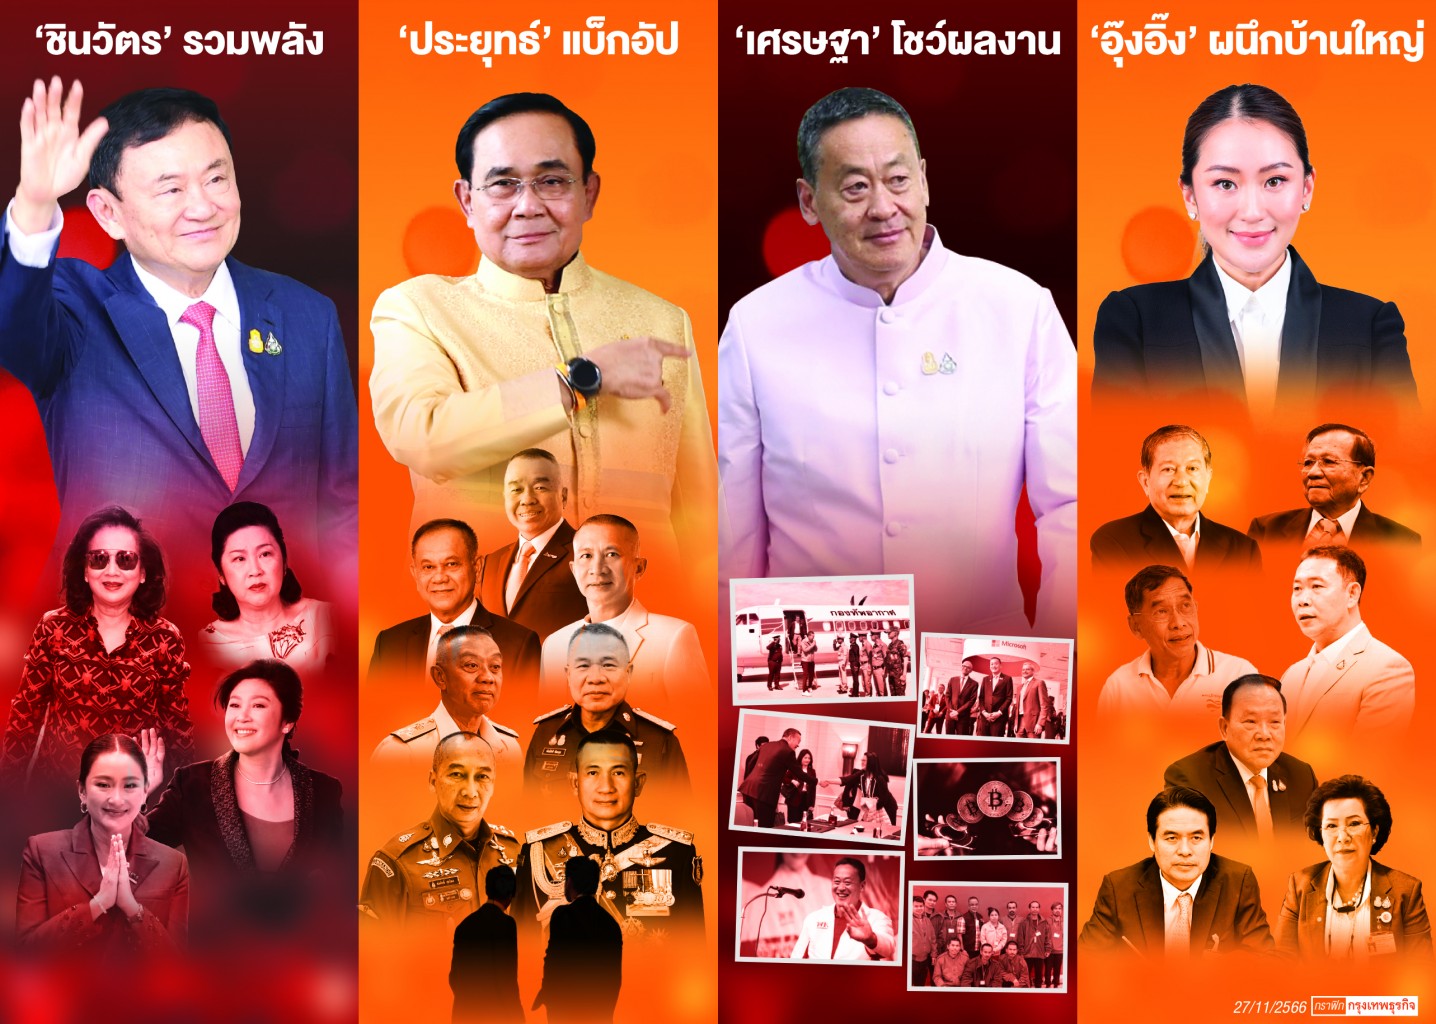 '4 เสา' ค้ำยันรัฐบาล ‘เพื่อไทย’ – ‘แพทองธาร’ ผนึกบ้านใหญ่ร่วมทัพ